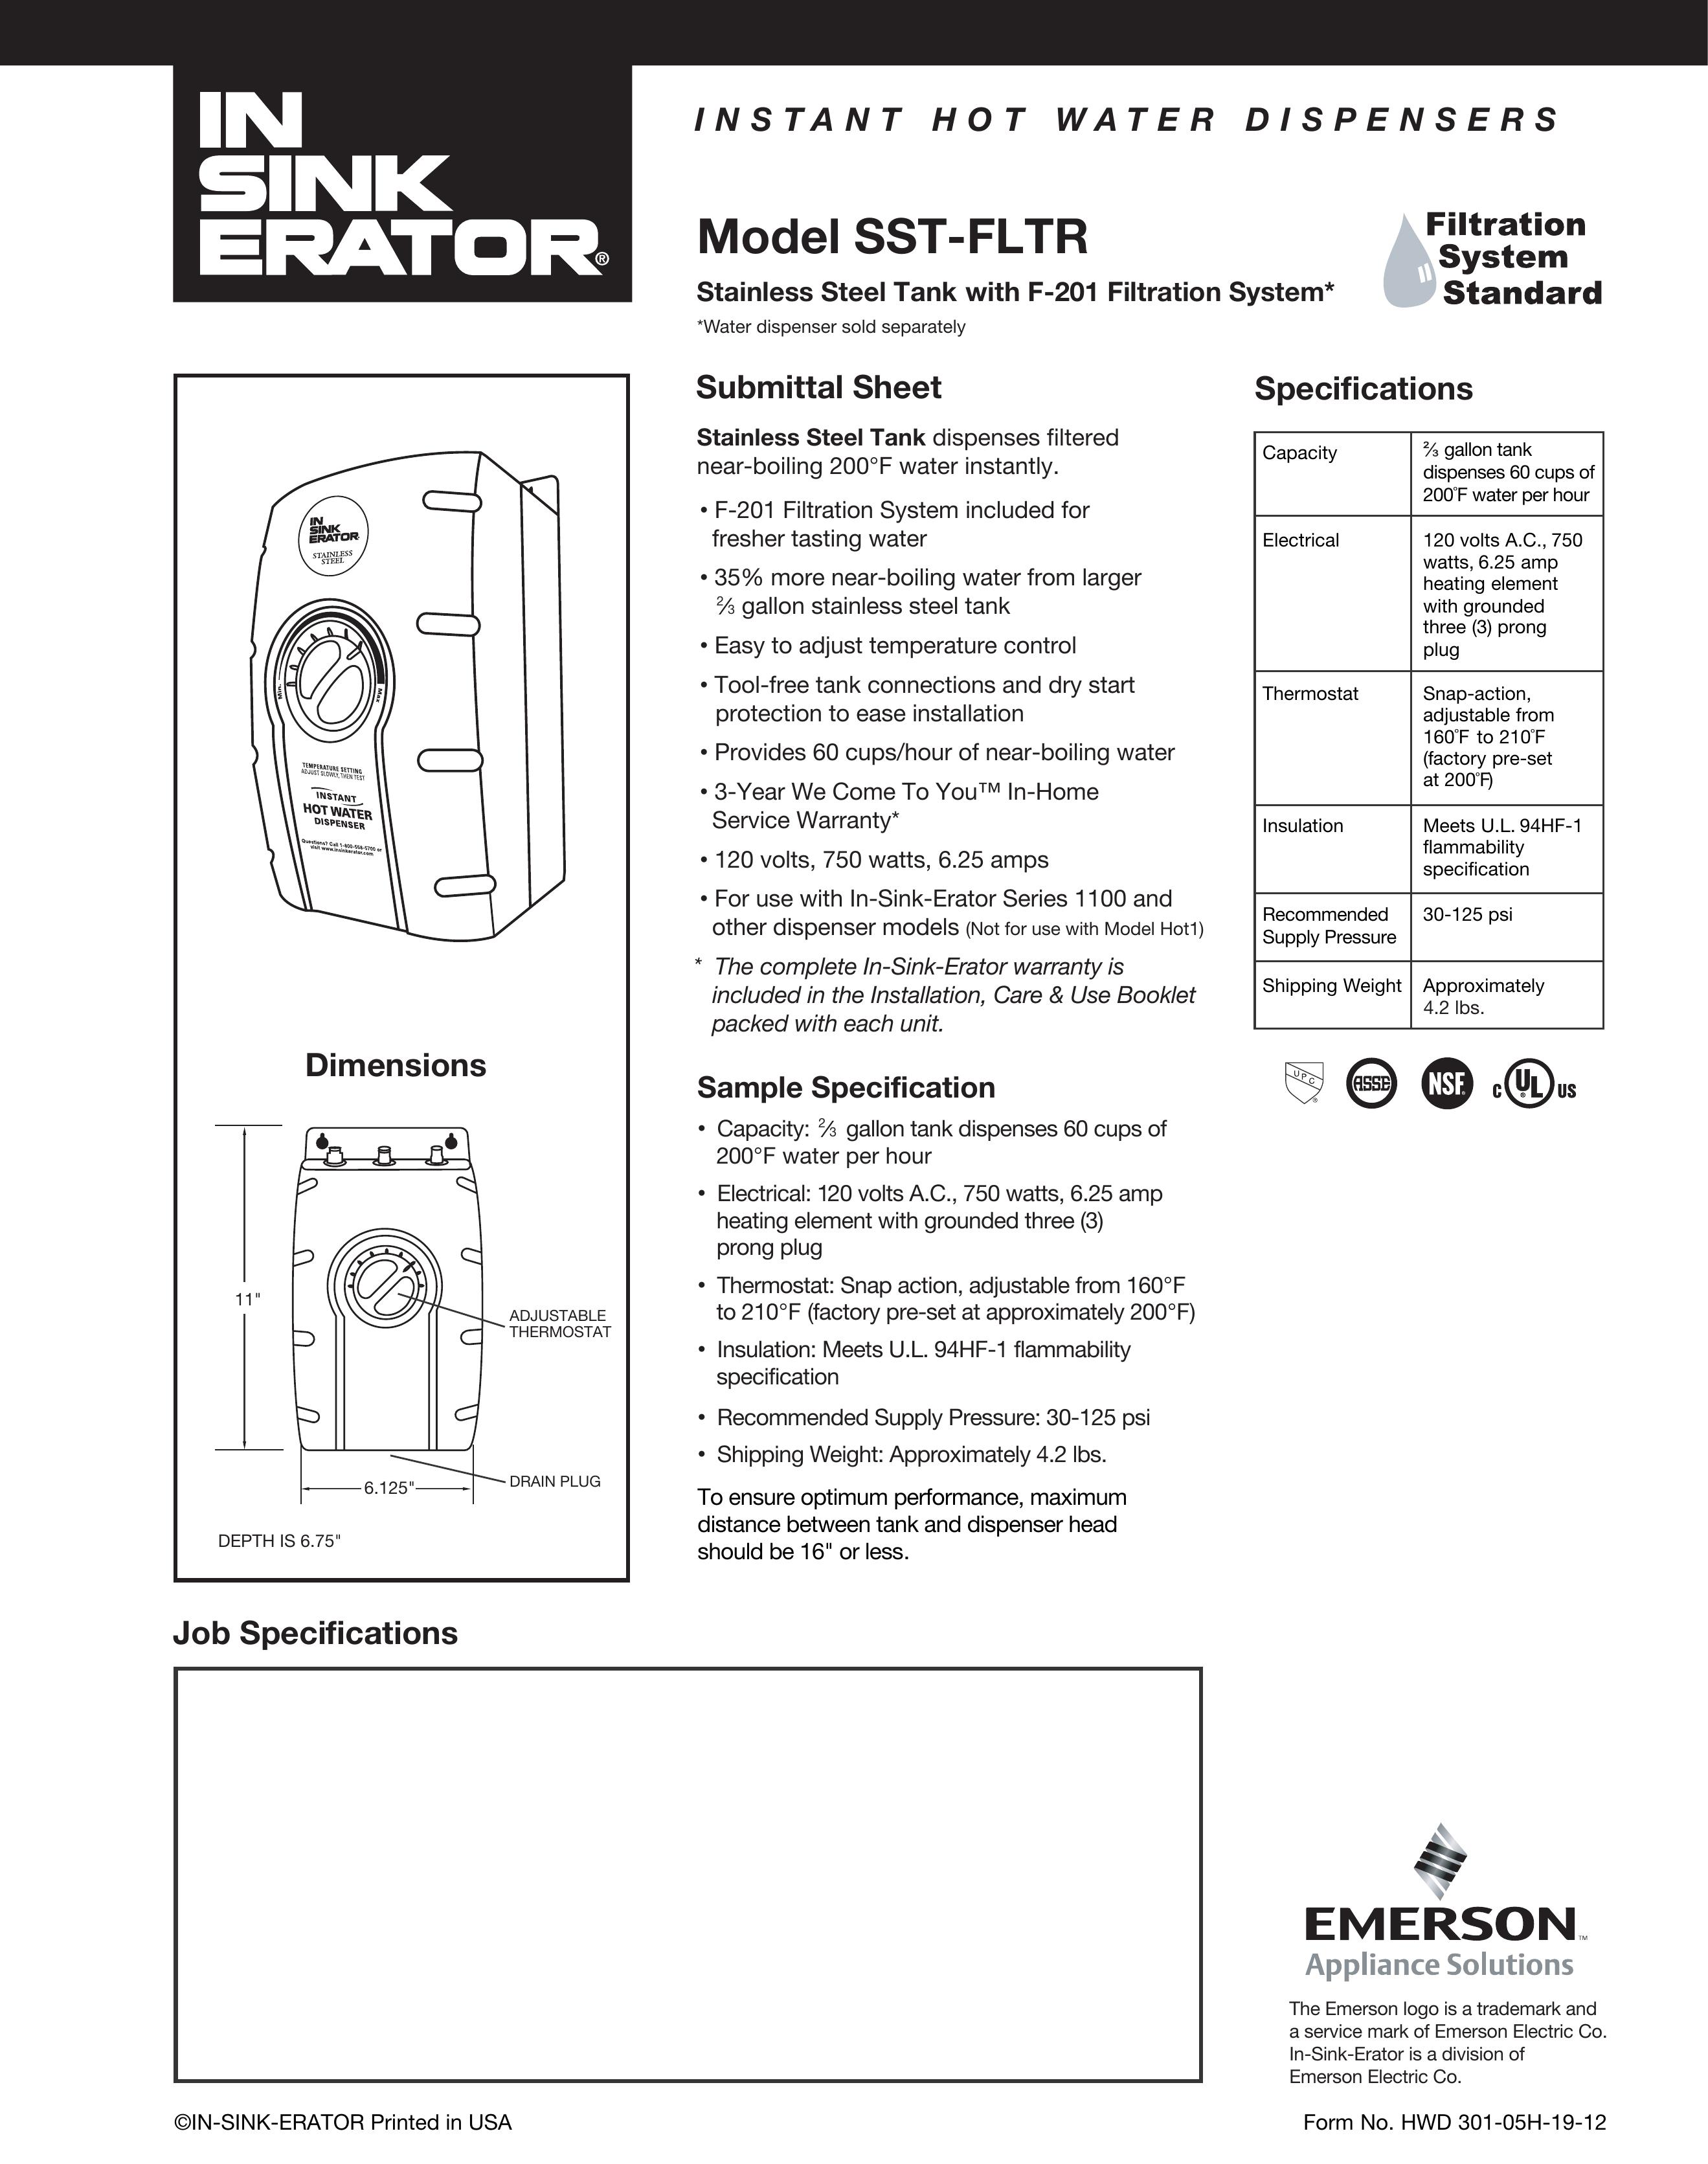 InSinkErator Model SST-FLTR Water Dispenser User Manual